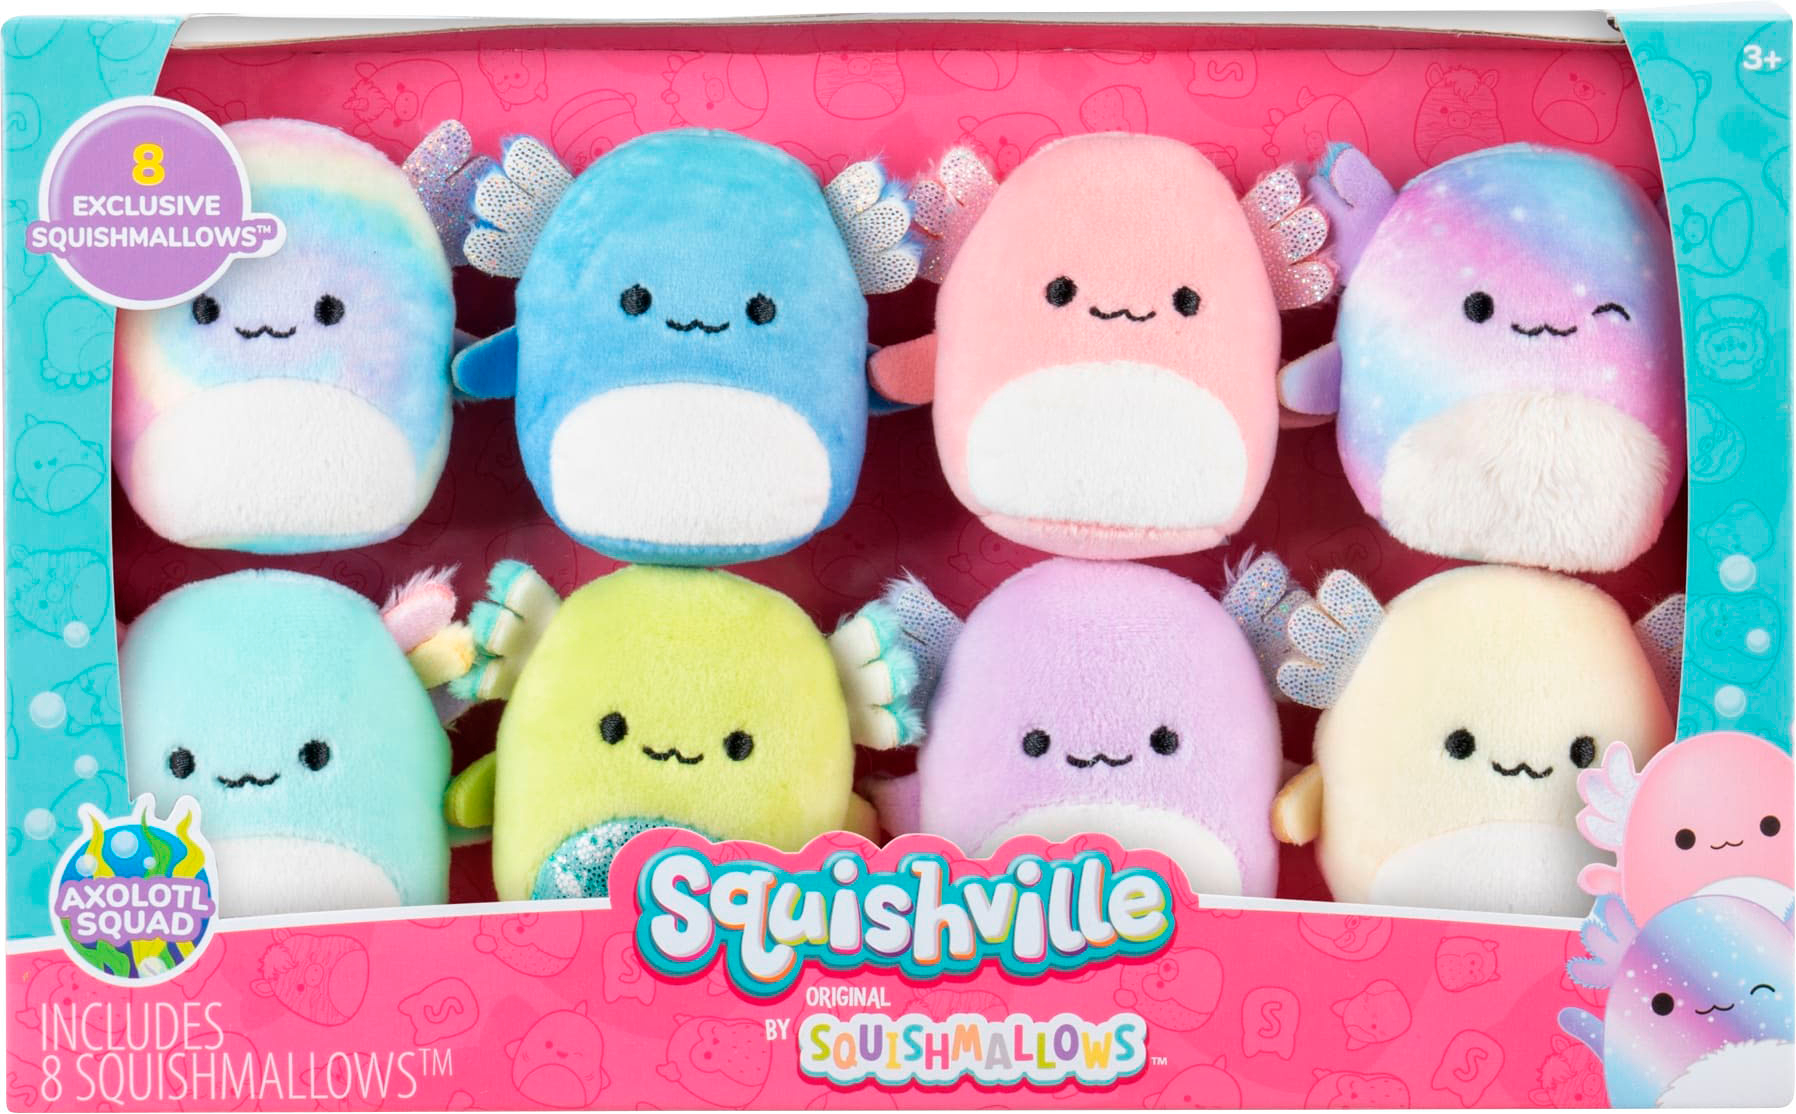 3 Squishville Mini Squishmallow Plush Toy